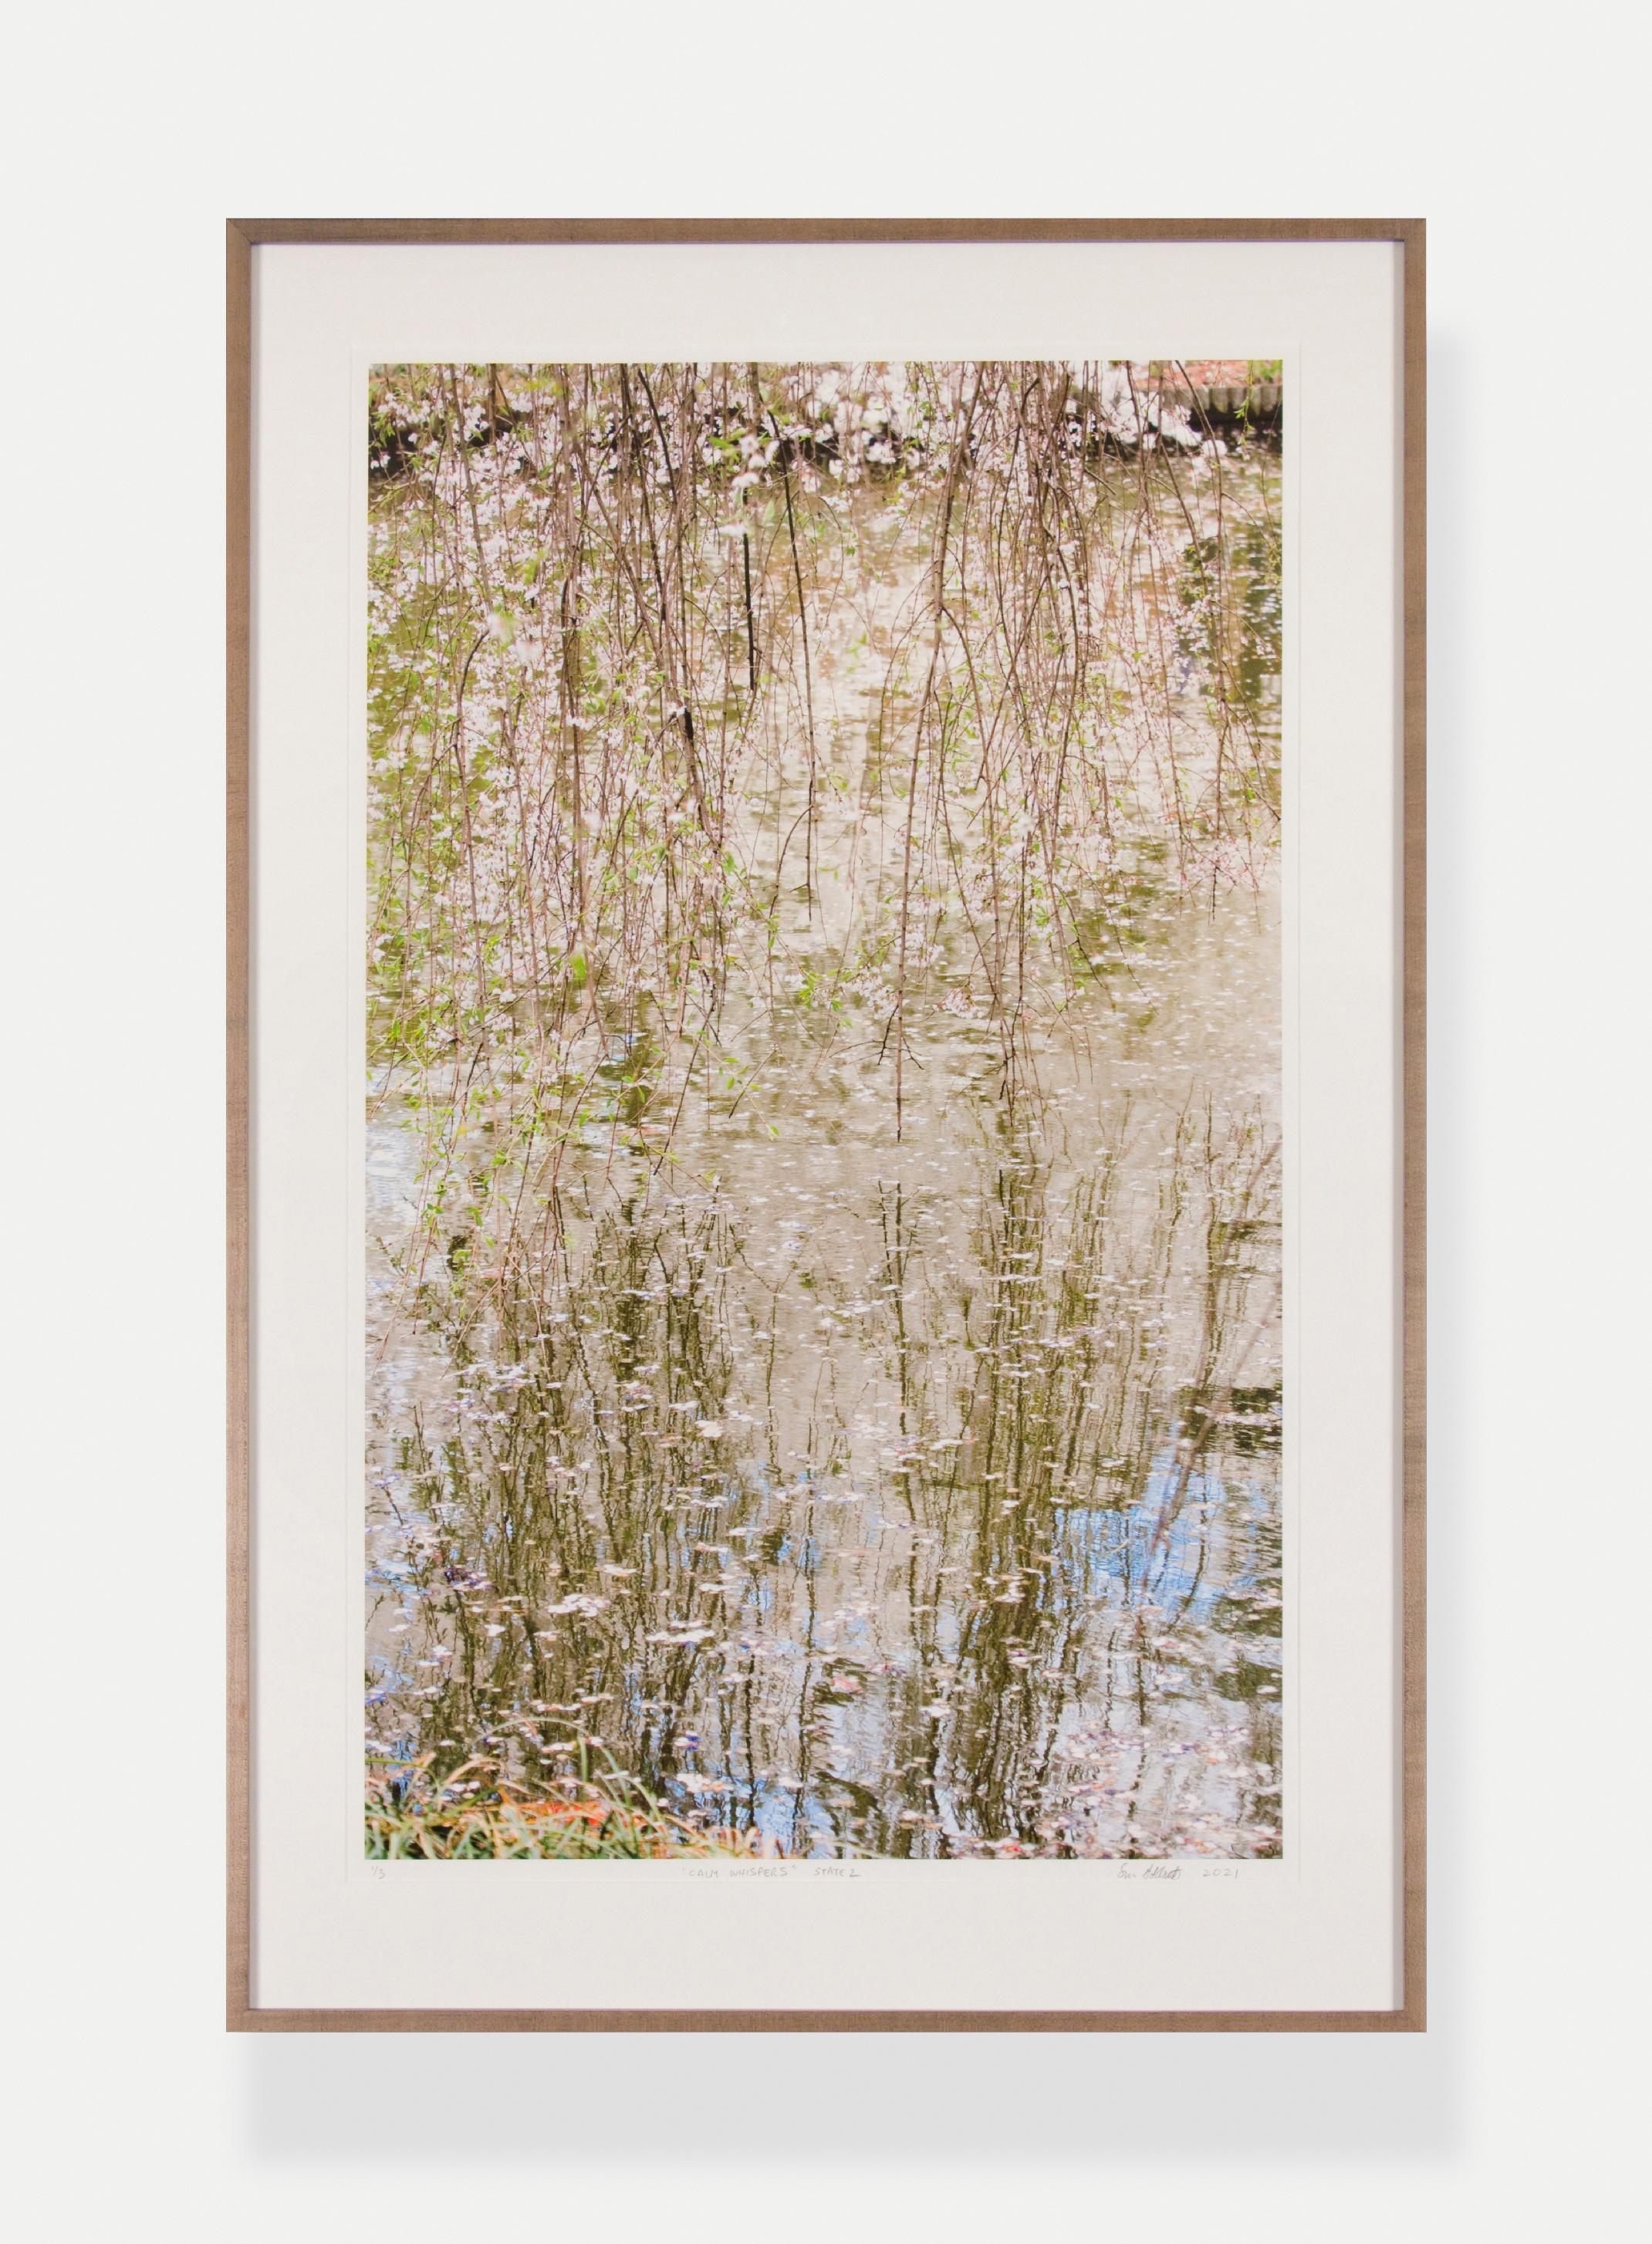 Landscape Photograph Susan Goldsmith - CALM WHISPERS - DÉCLARATION 2  Paysage aquatique / Reflections / Art contemporain